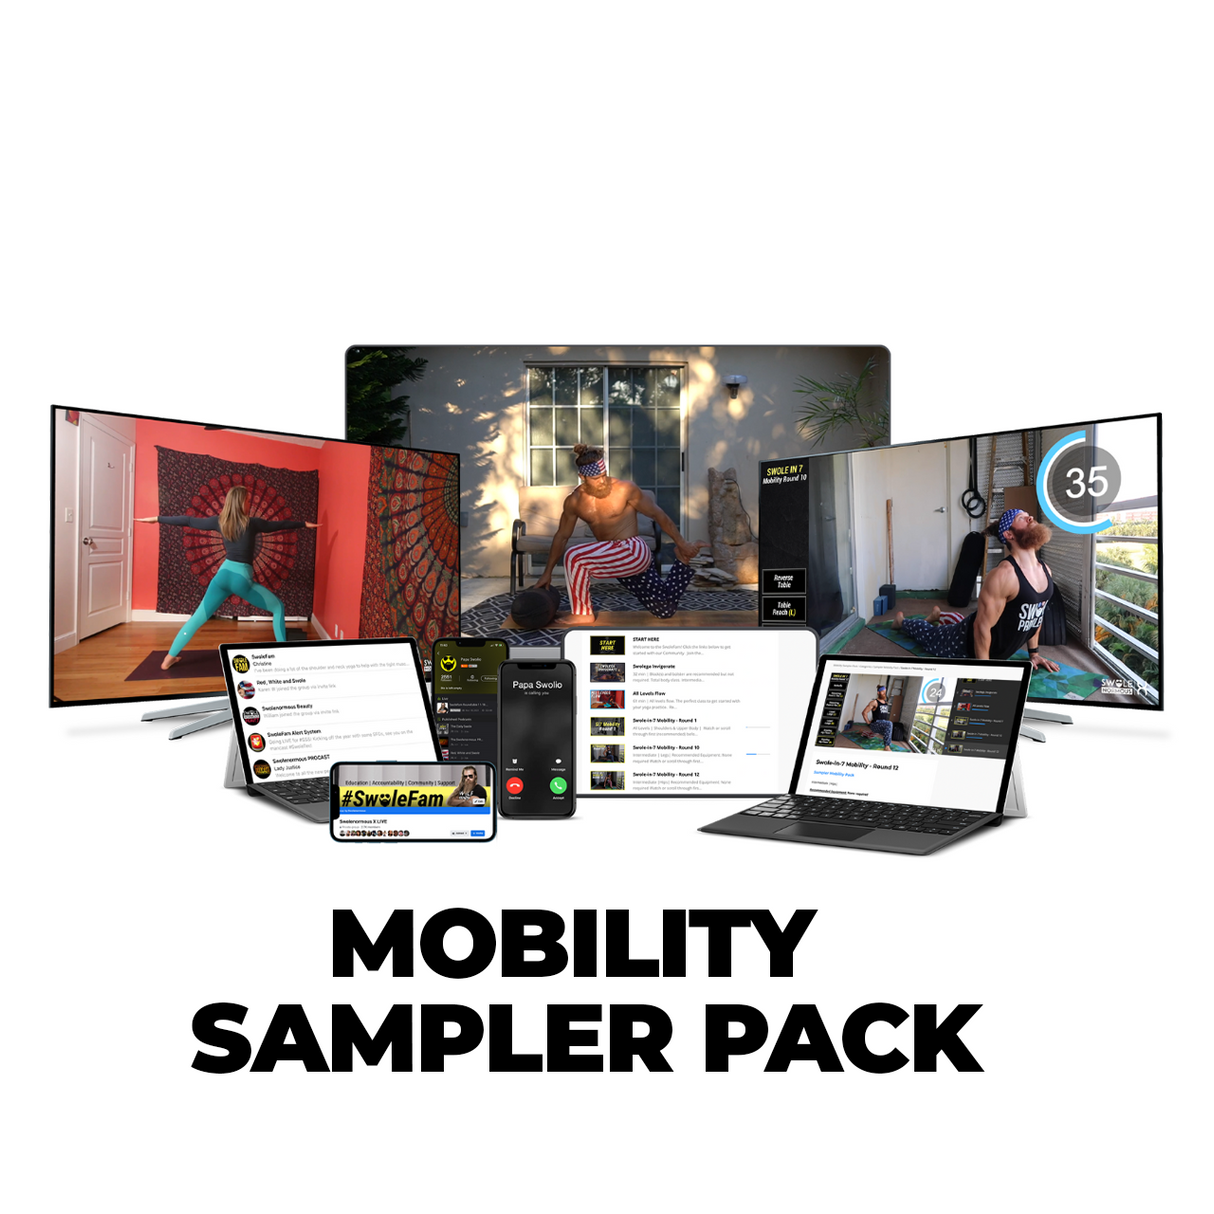 Mobility Sampler Pack